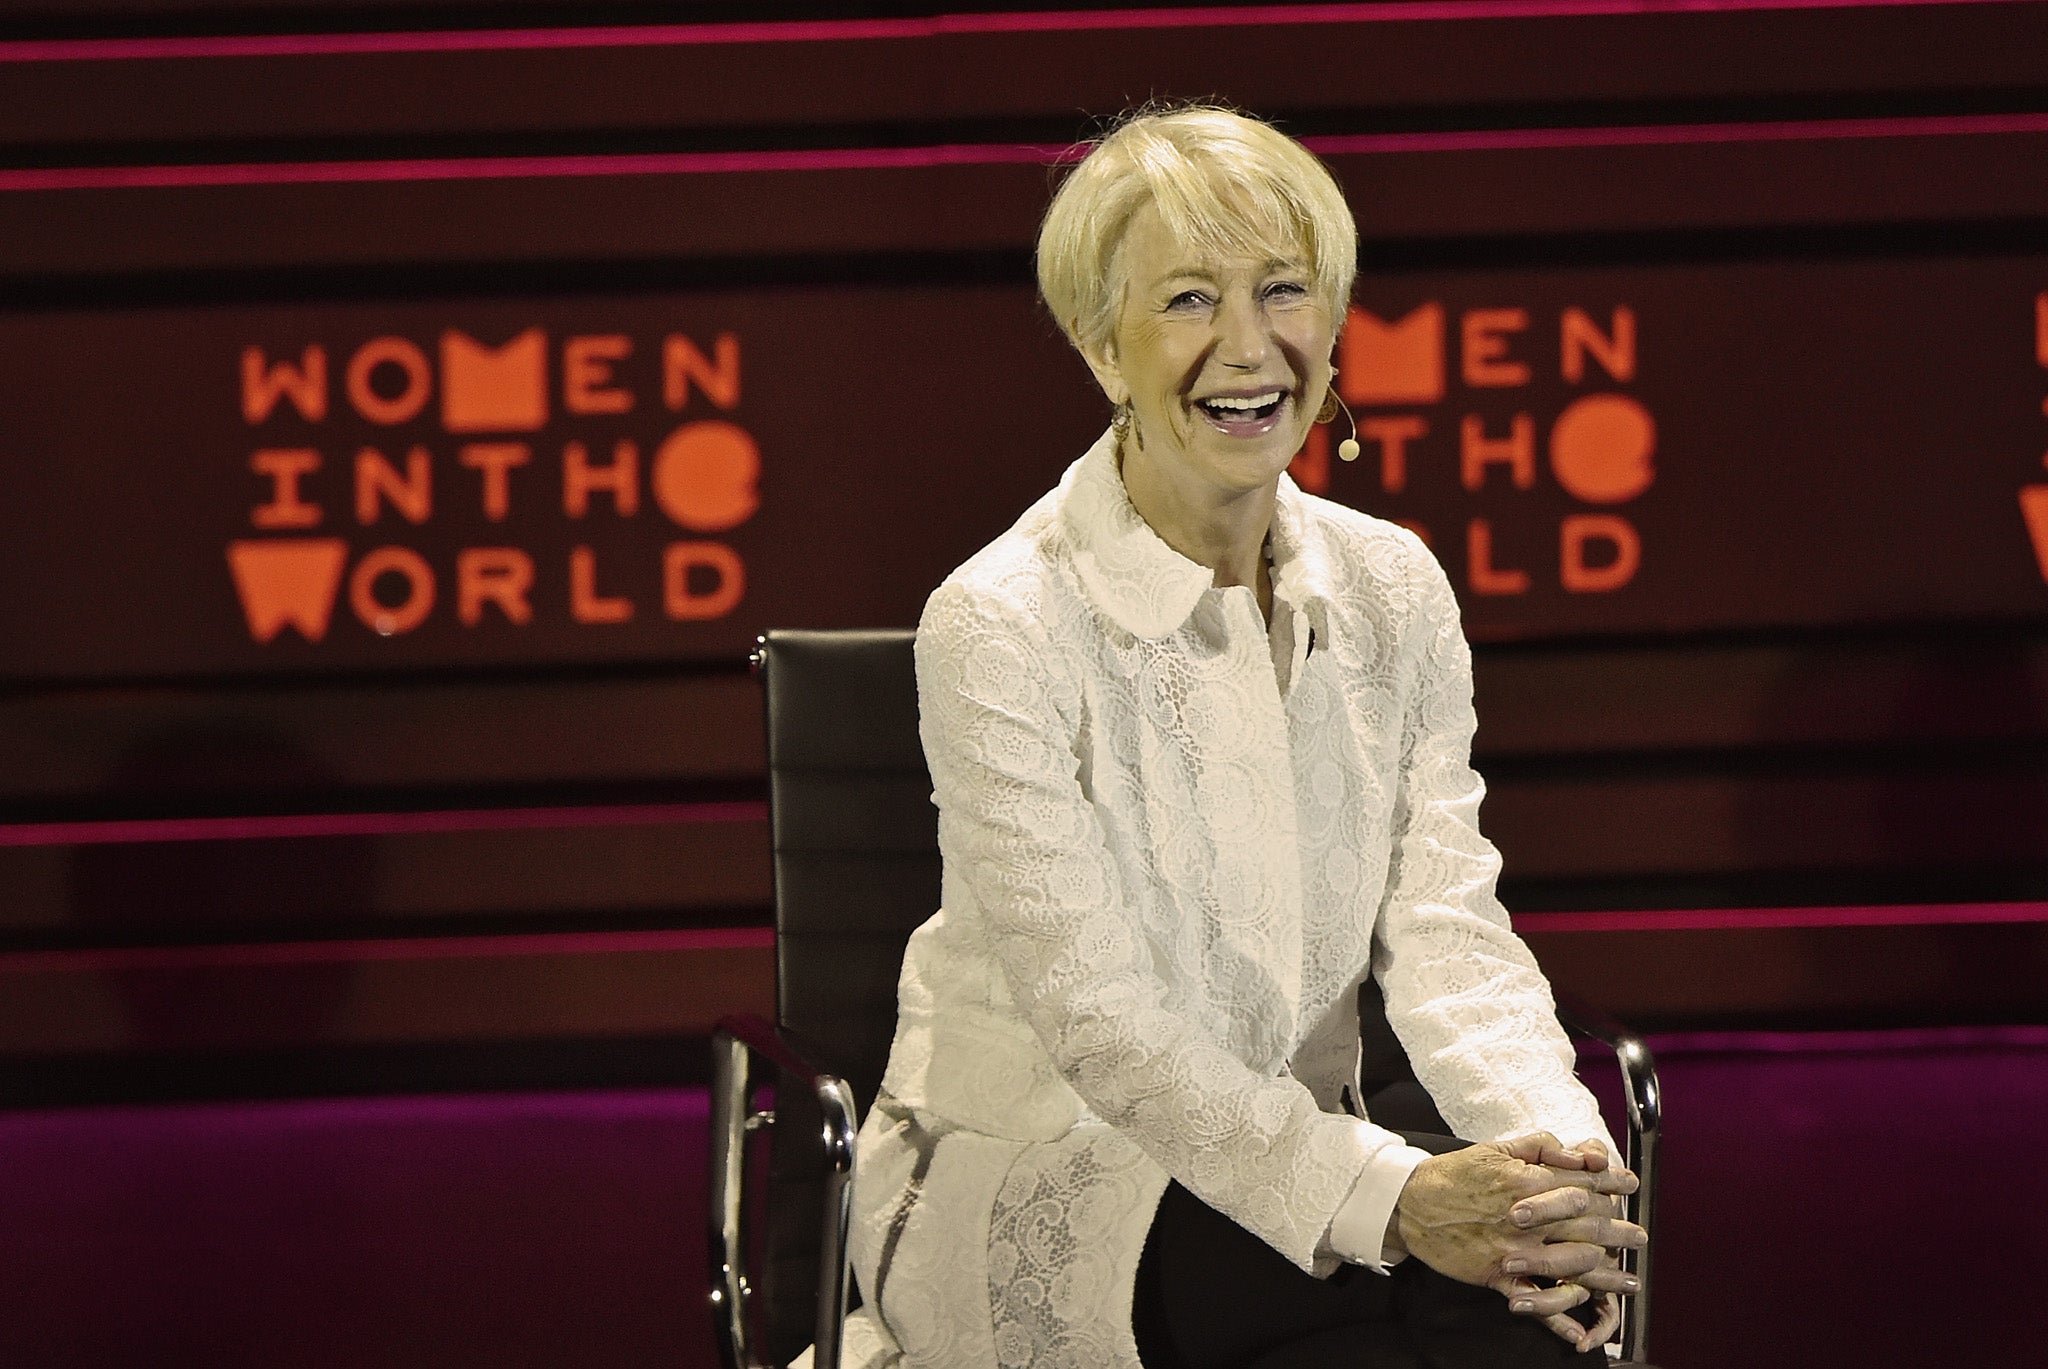 Helen Mirren speaking at the Women Into the World summit in New York